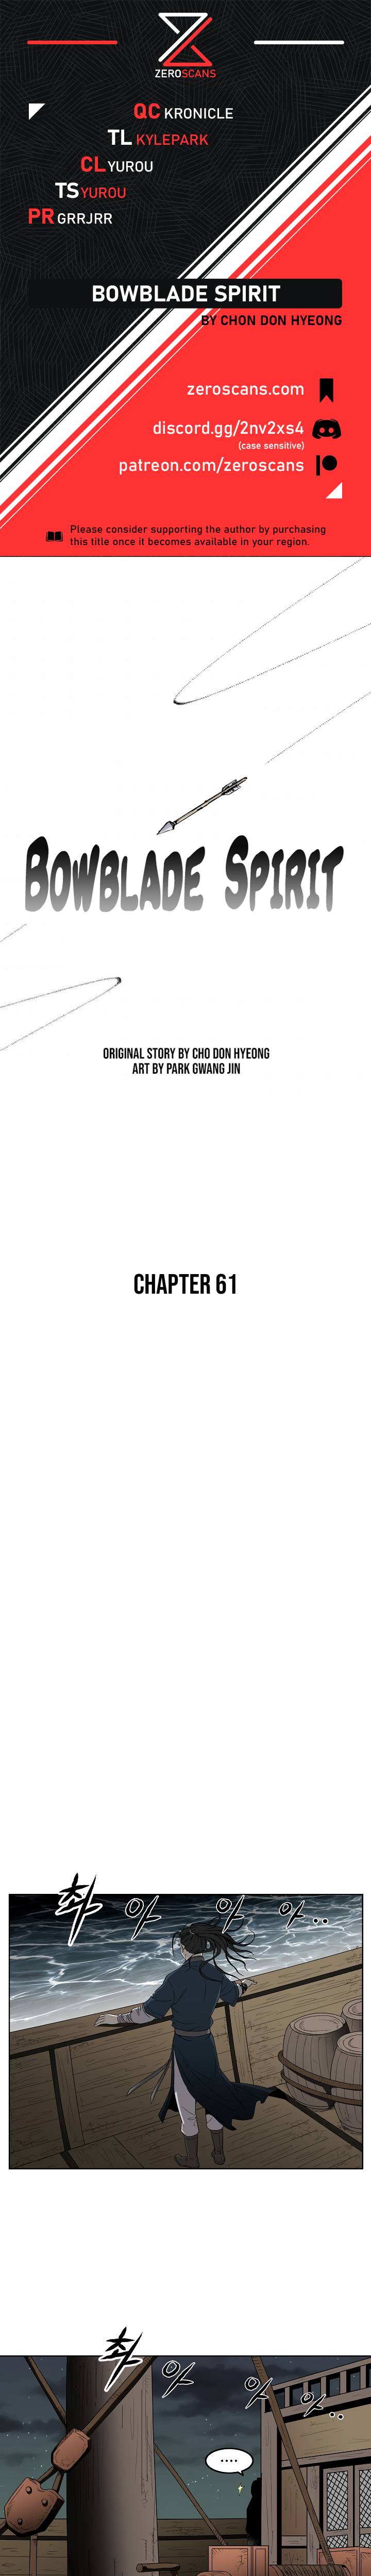 Bowblade Spirit - Chapter 61 Page 1